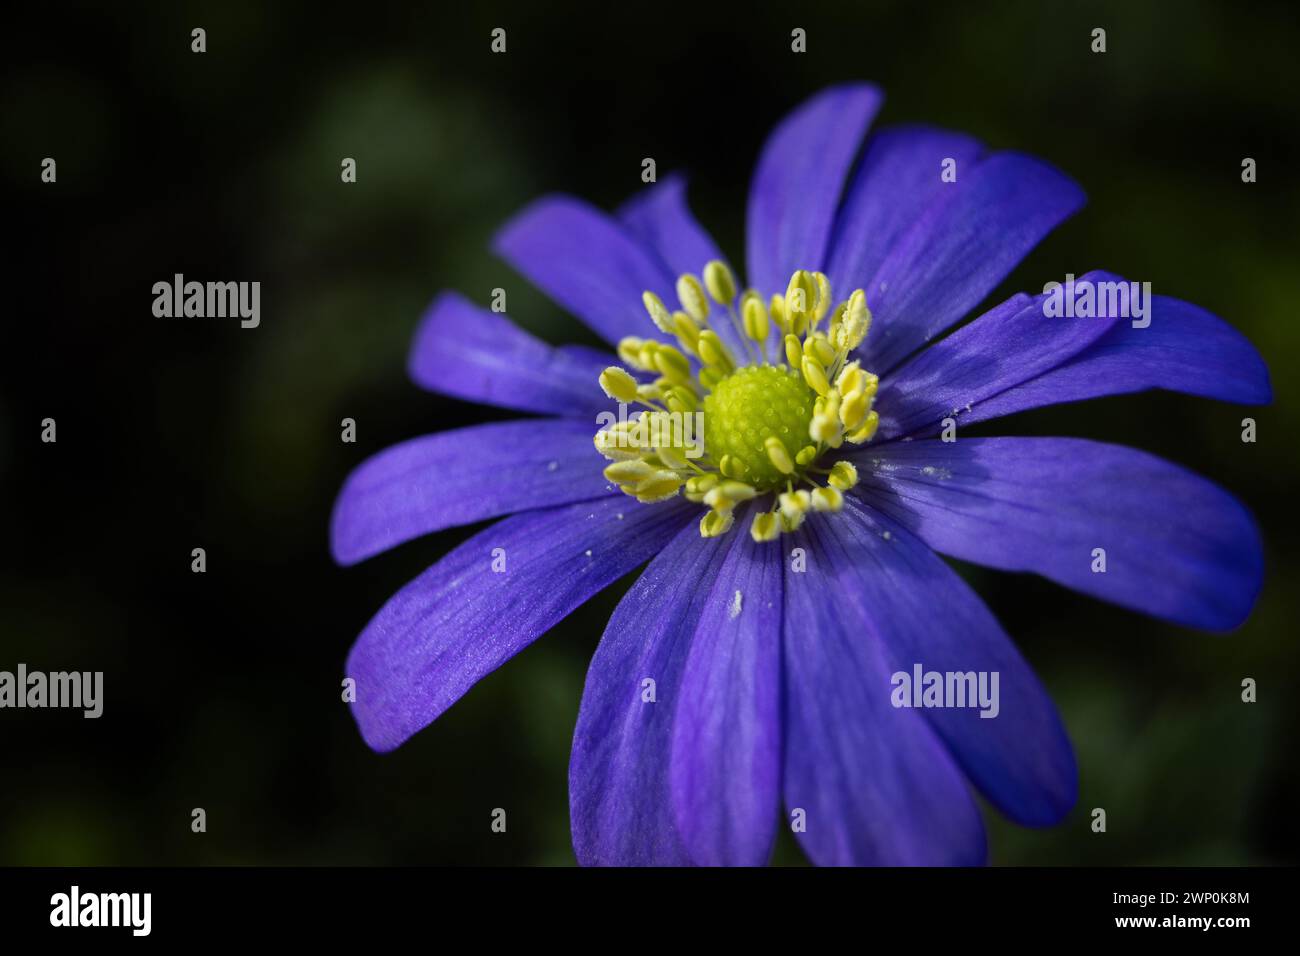 Gros plan image de la belle violette d'une fleur de blanda anémone également connue sous le nom de fleur de vent grecque ou anémone balkanique. Copier l'espace vers la gauche. Banque D'Images